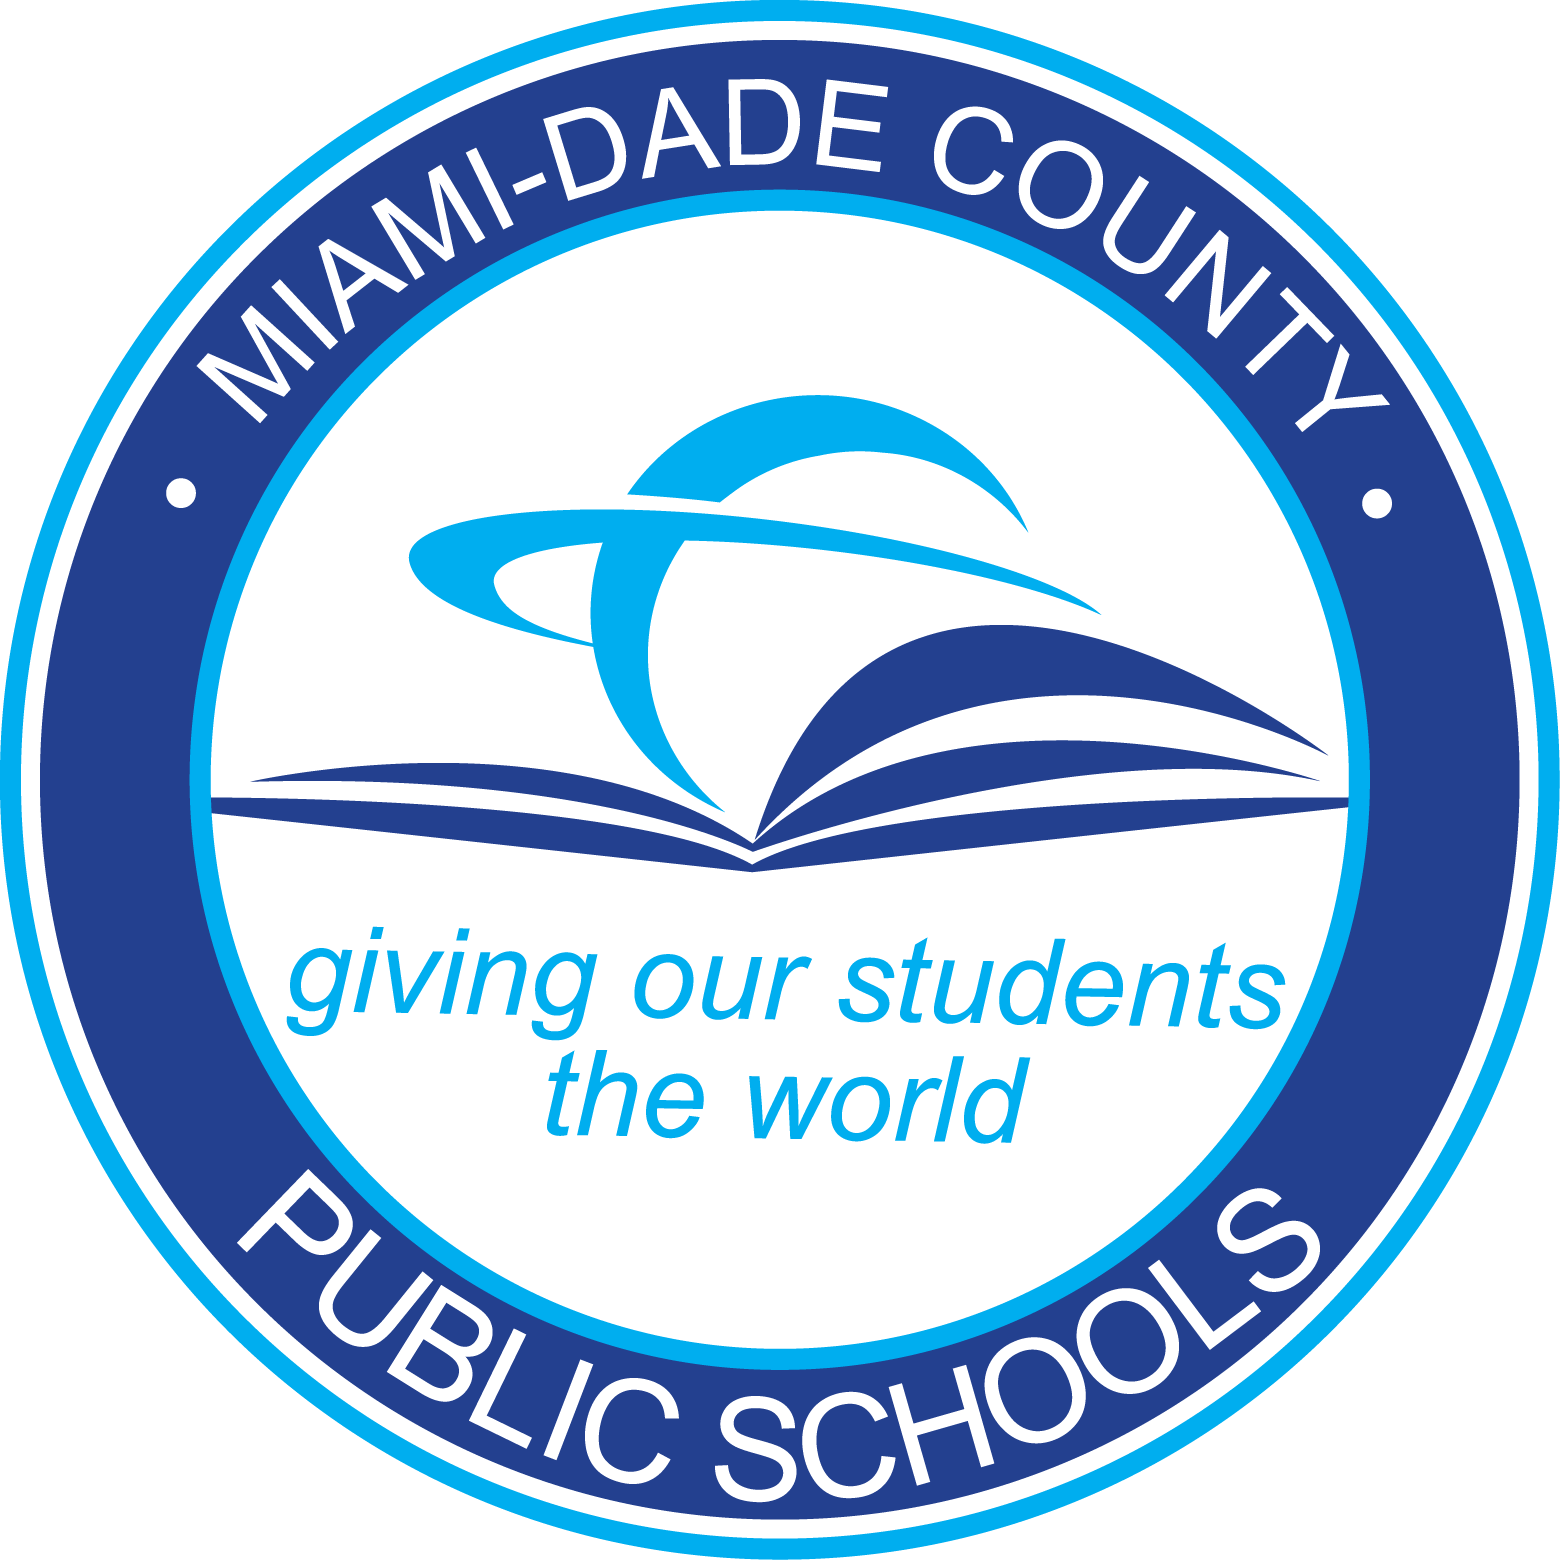 DCPS Logo - Miami Dade County Public Schools